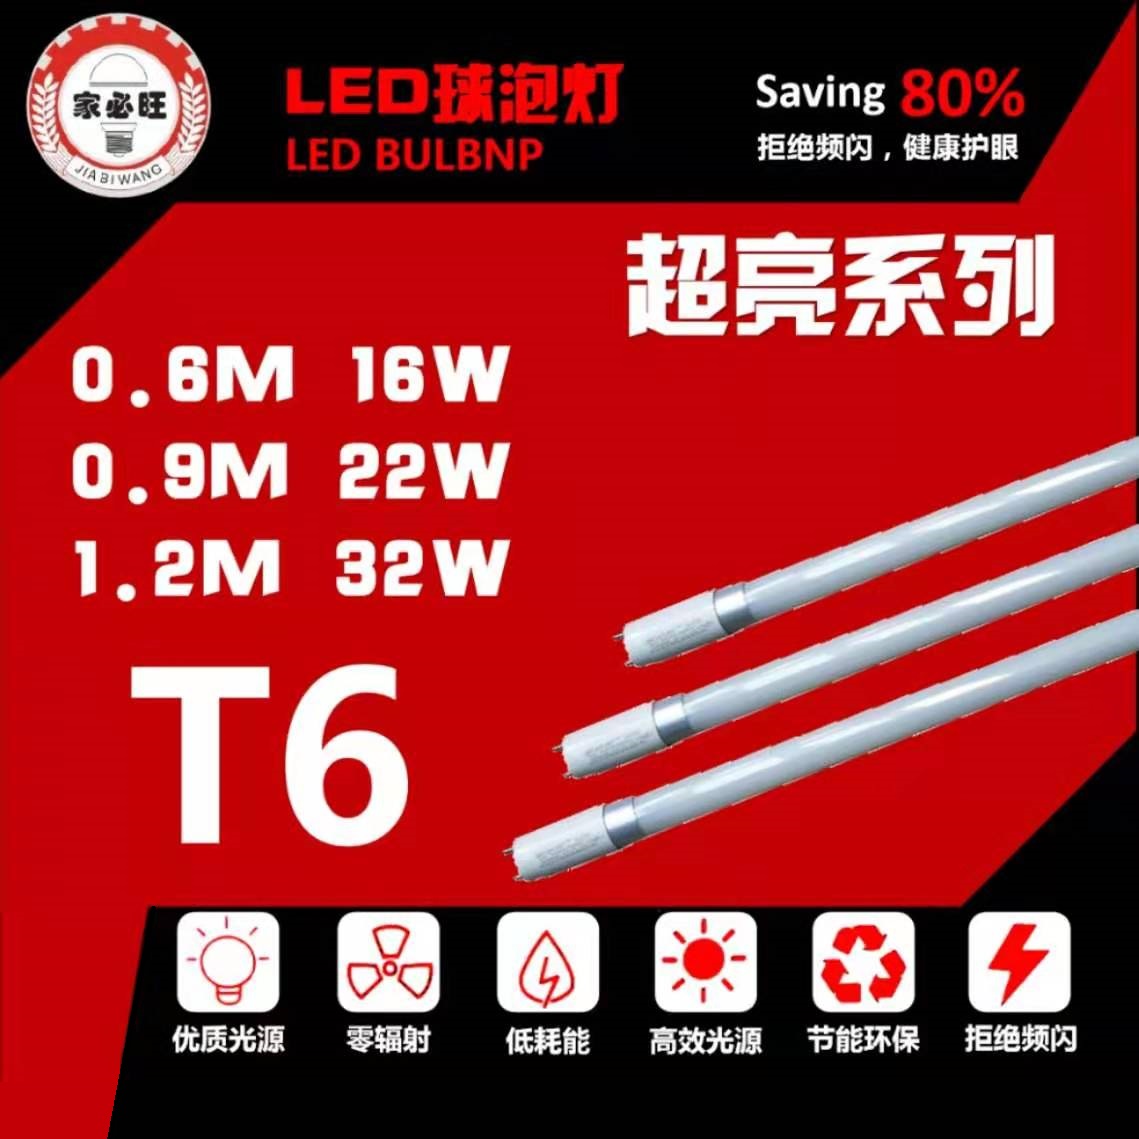 LED super bright Series T6 lamp tube